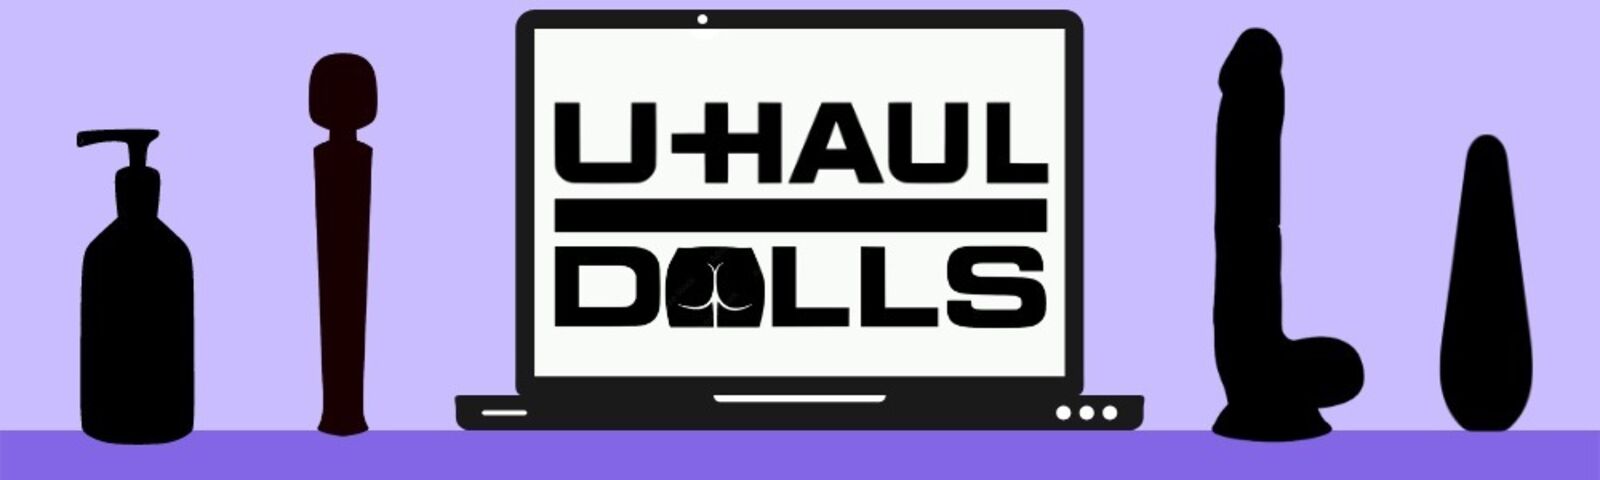 See UHaulDolls profile